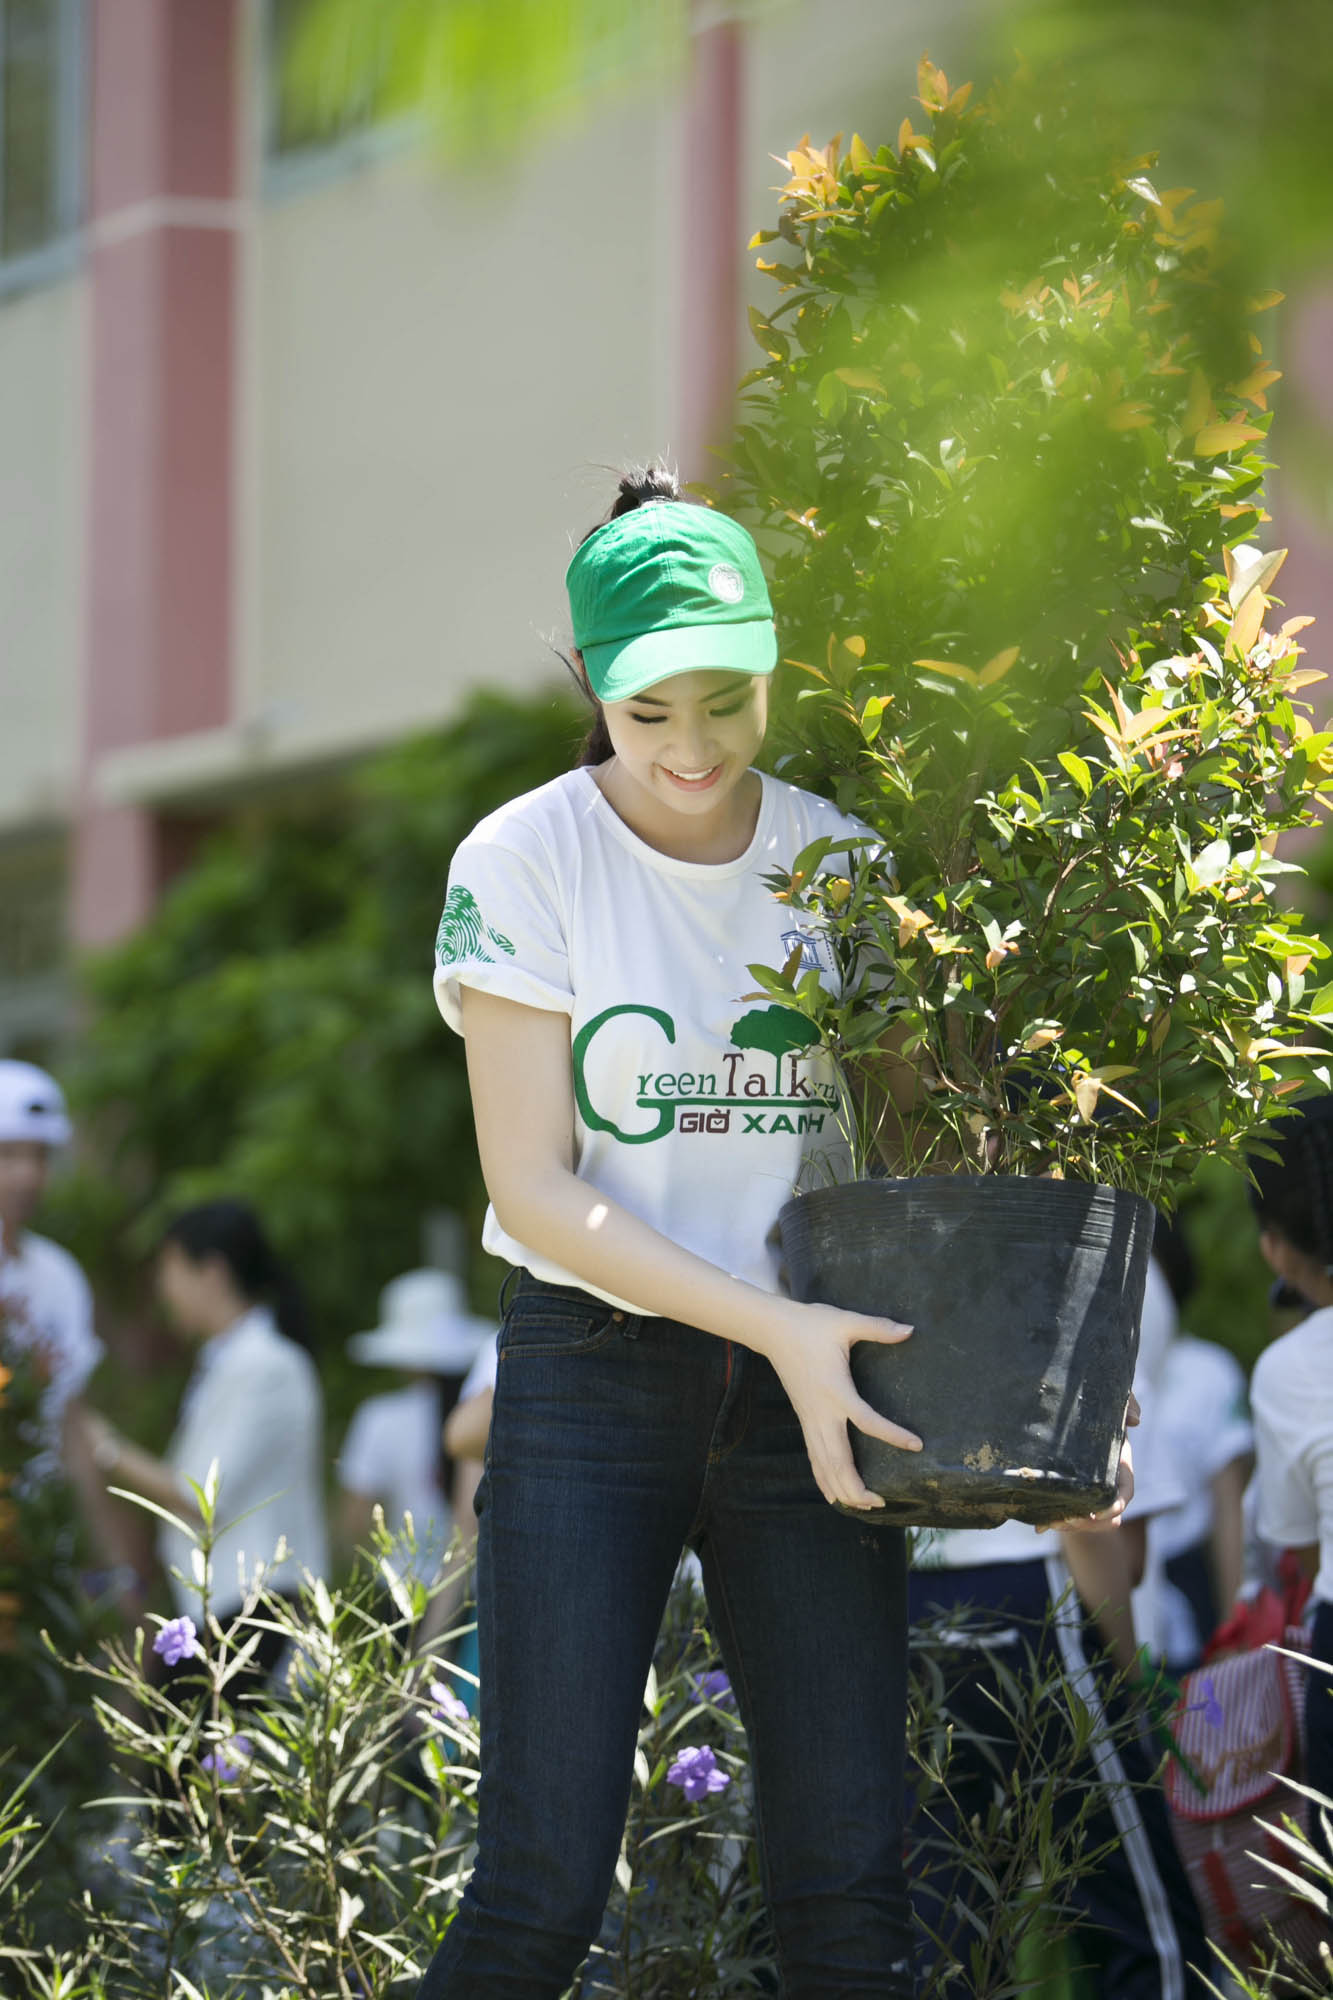 Sau đó cô đến với trường tiểu học và trung học Phú Mỹ, An Mỹ, ở đây Ngọc Hân được các em nhỏ đón chào rất nồng nhiệt và năng nổ cùng cô tham gia các hoạt động trồng cây tại khuôn viên trường học.